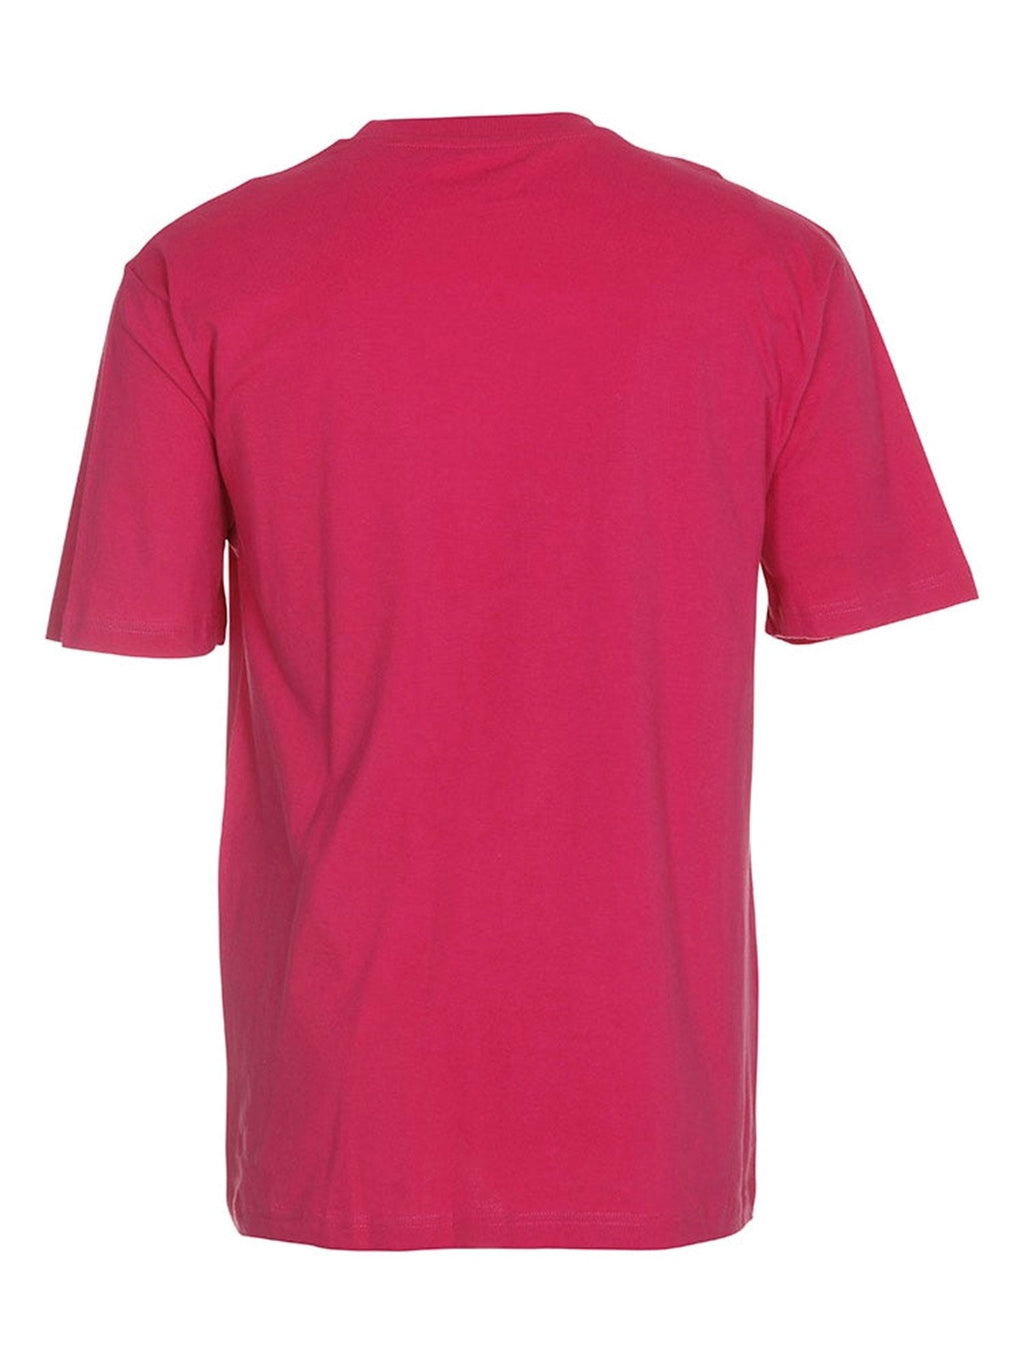 Prevelika majica - ružičasta